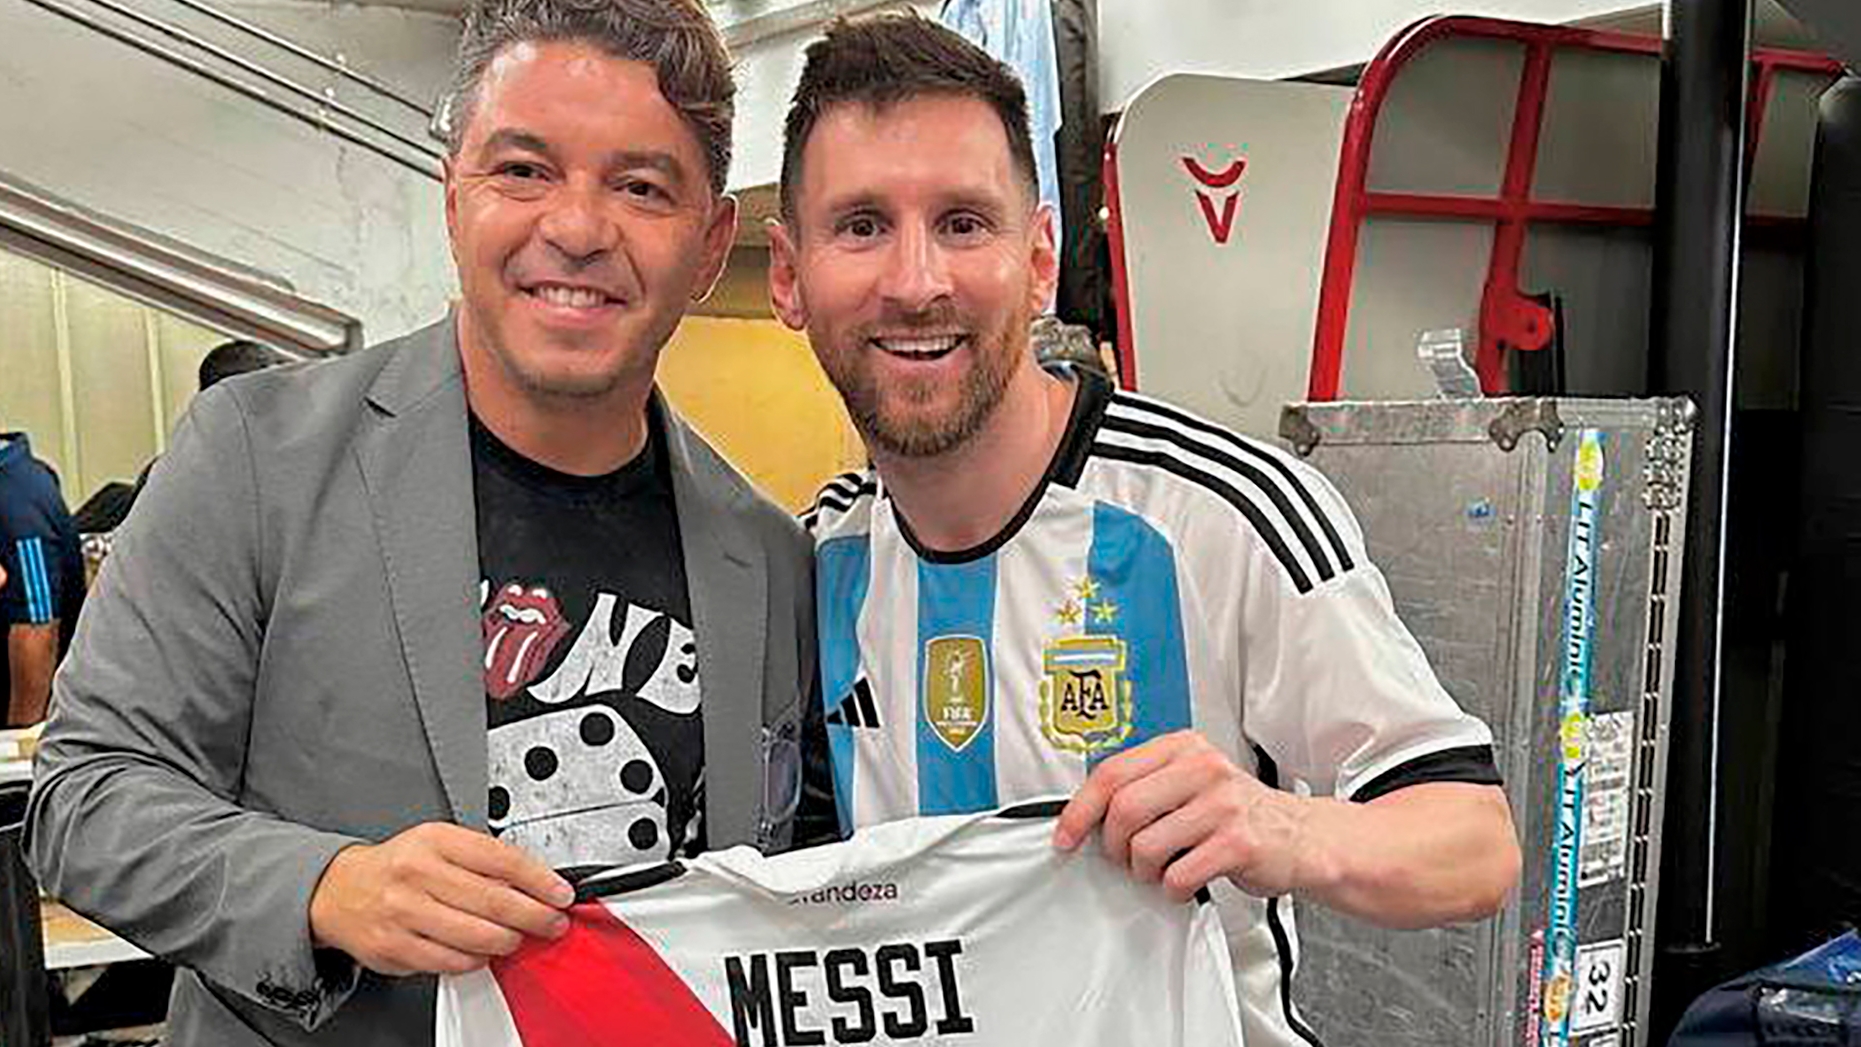 El guiño de River Plate a Otamendi en la fiesta de los campeones y la reunión de Gallardo con Messi: “La foto perfecta existe”